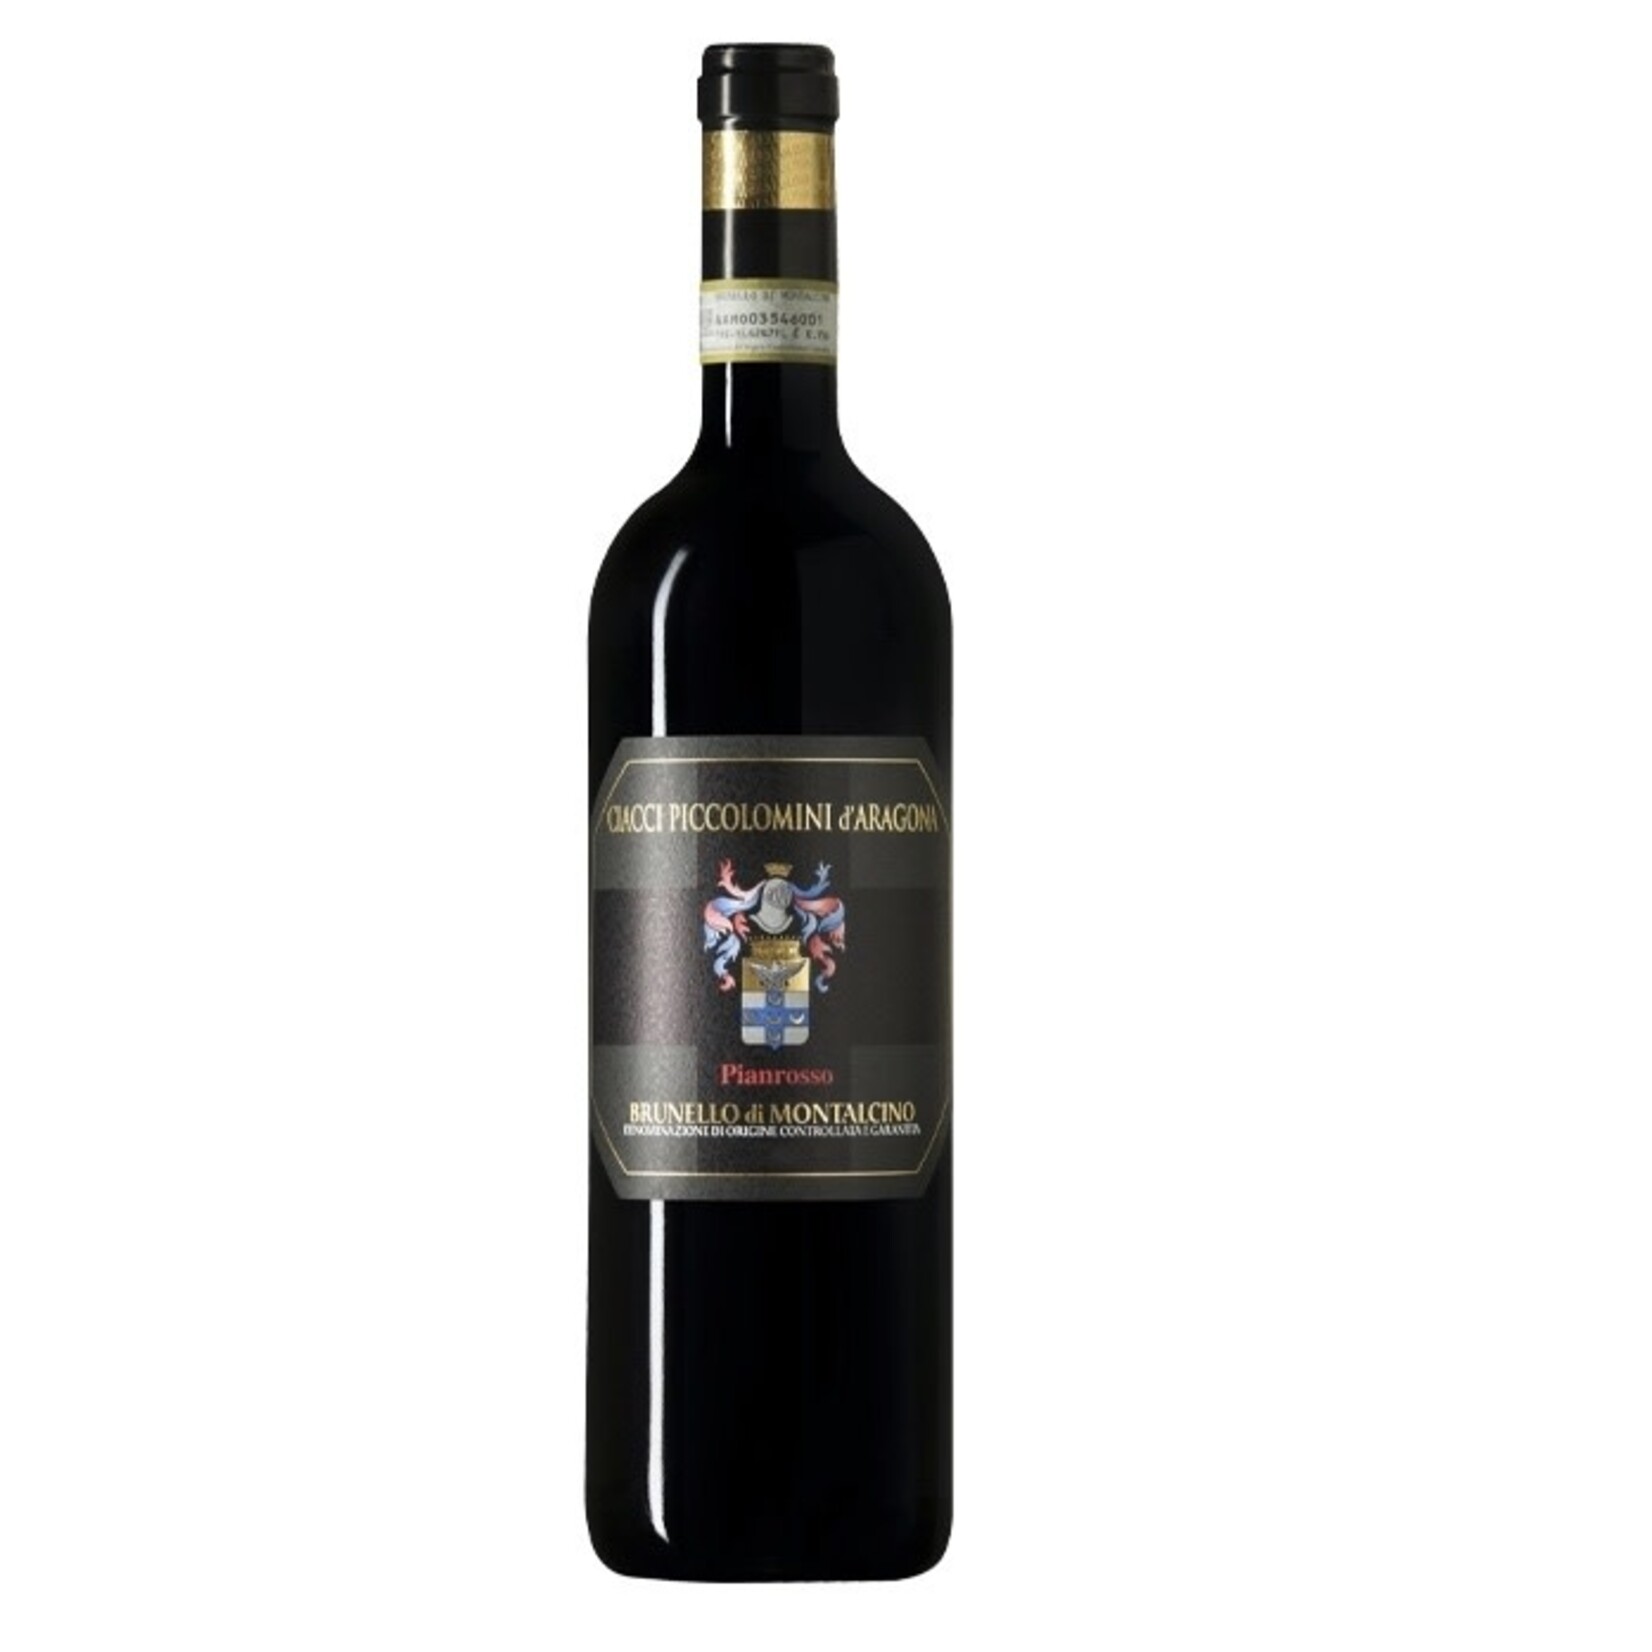 Wine Ciacci Piccolomini Brunello di Montalcino Pianrosso 2019